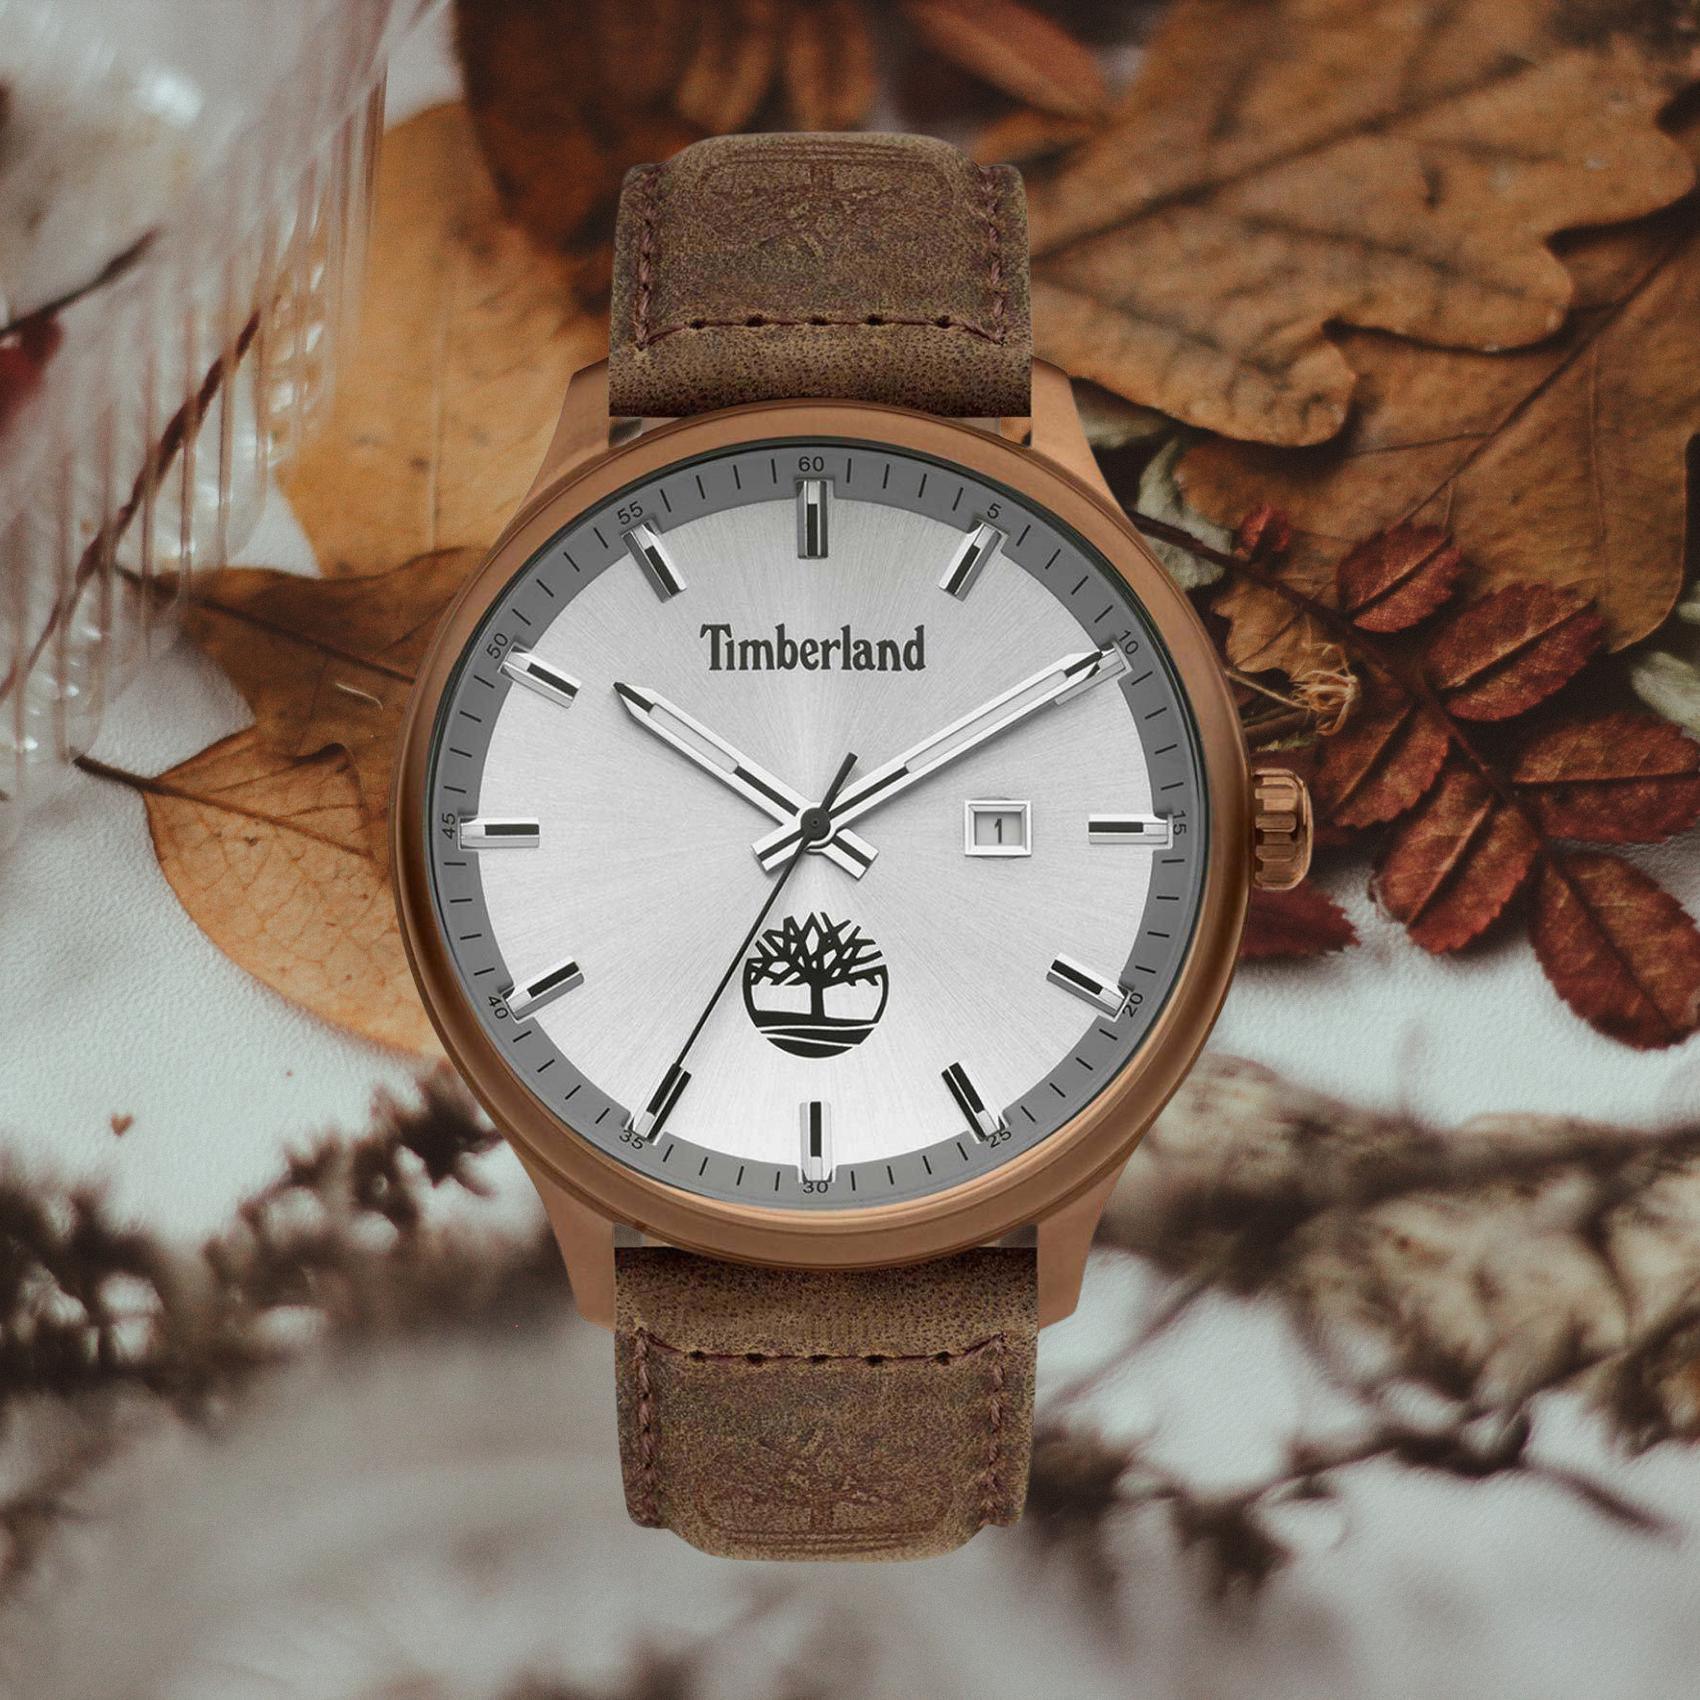 Αντρικό ρολόι Timberland Southford TDWGB2102203 με καφέ δερμάτινο λουράκι και ασημί καντράν διαμέτρου 46mm με ημερομηνία.